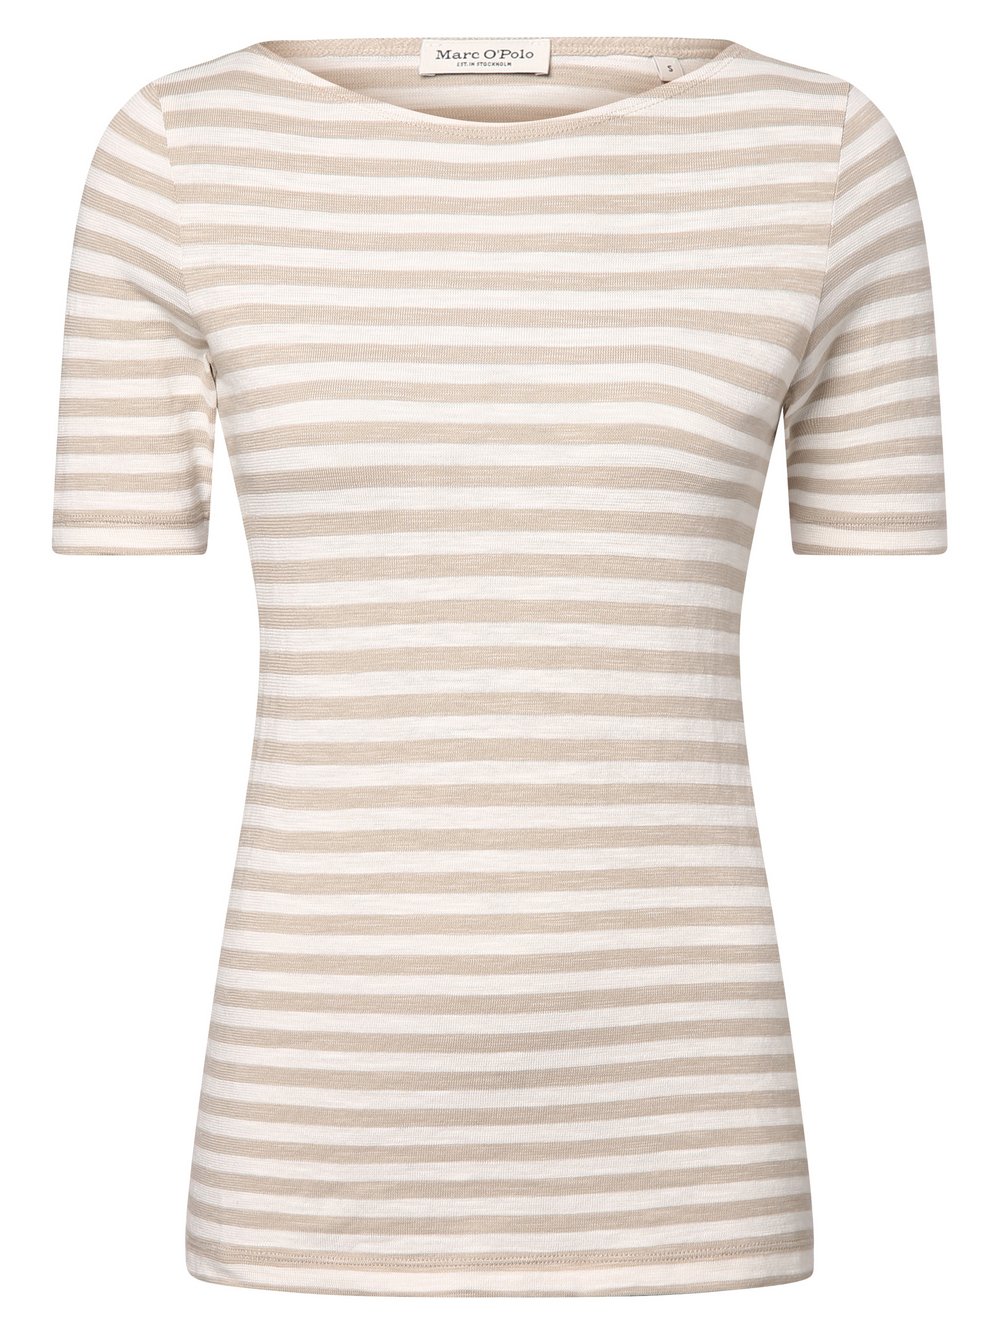 Marc O'Polo Koszulka damska Kobiety Bawełna beżowy|biały w paski, XL